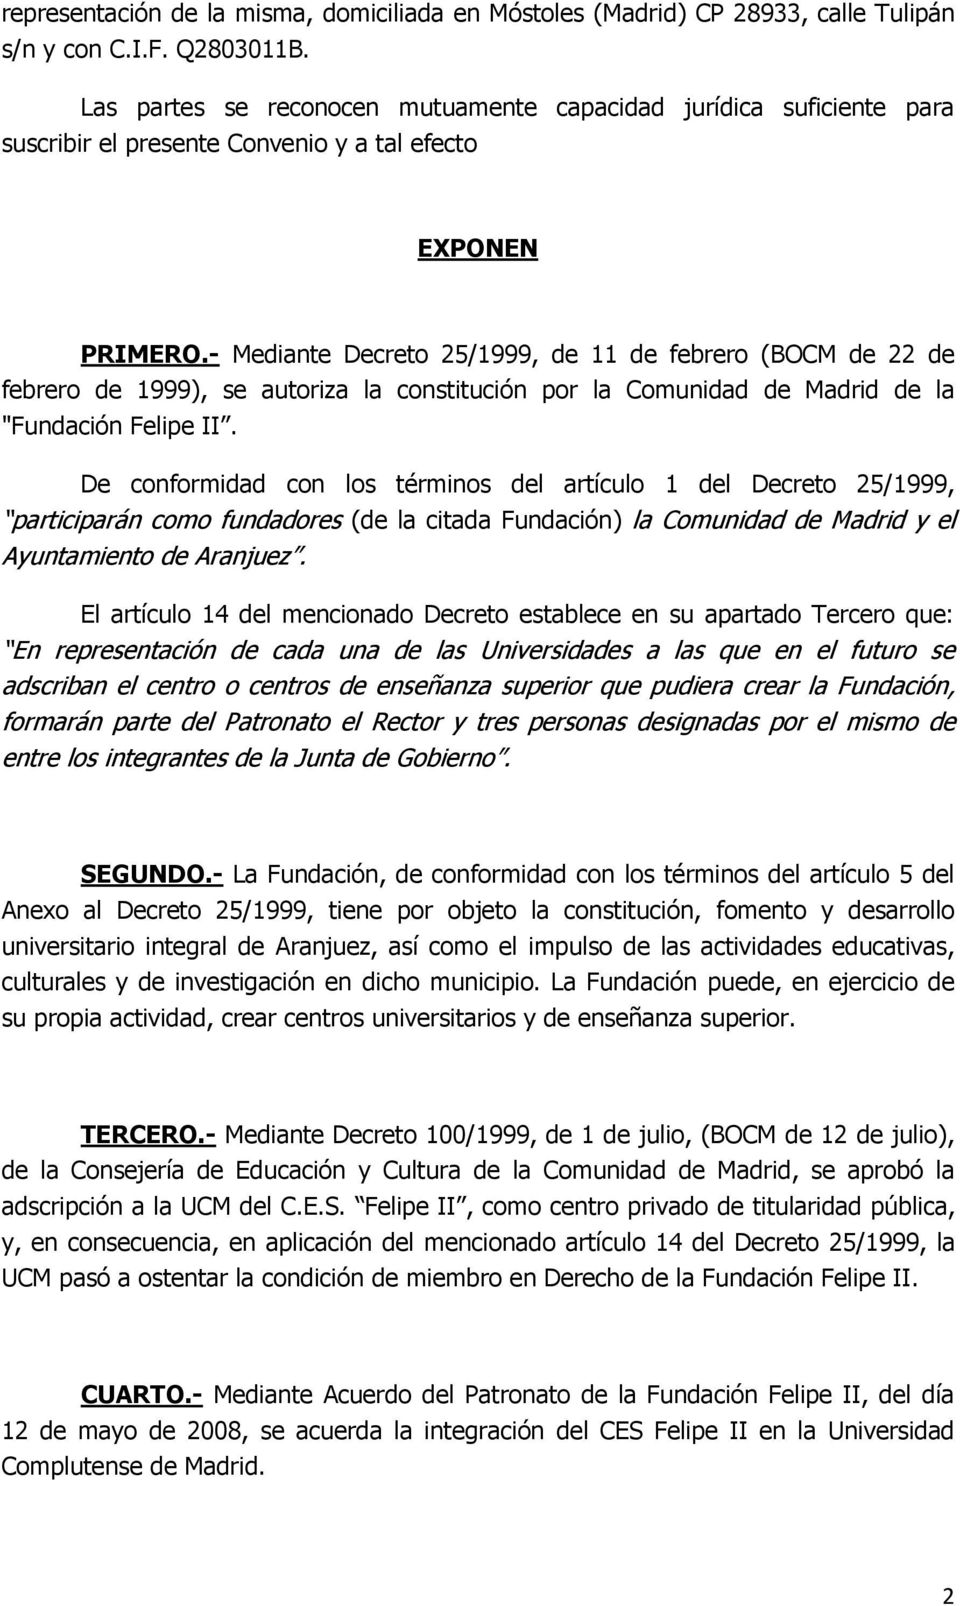 - Mediante Decreto 25/1999, de 11 de febrero (BOCM de 22 de febrero de 1999), se autoriza la constitución por la Comunidad de Madrid de la "Fundación Felipe II.